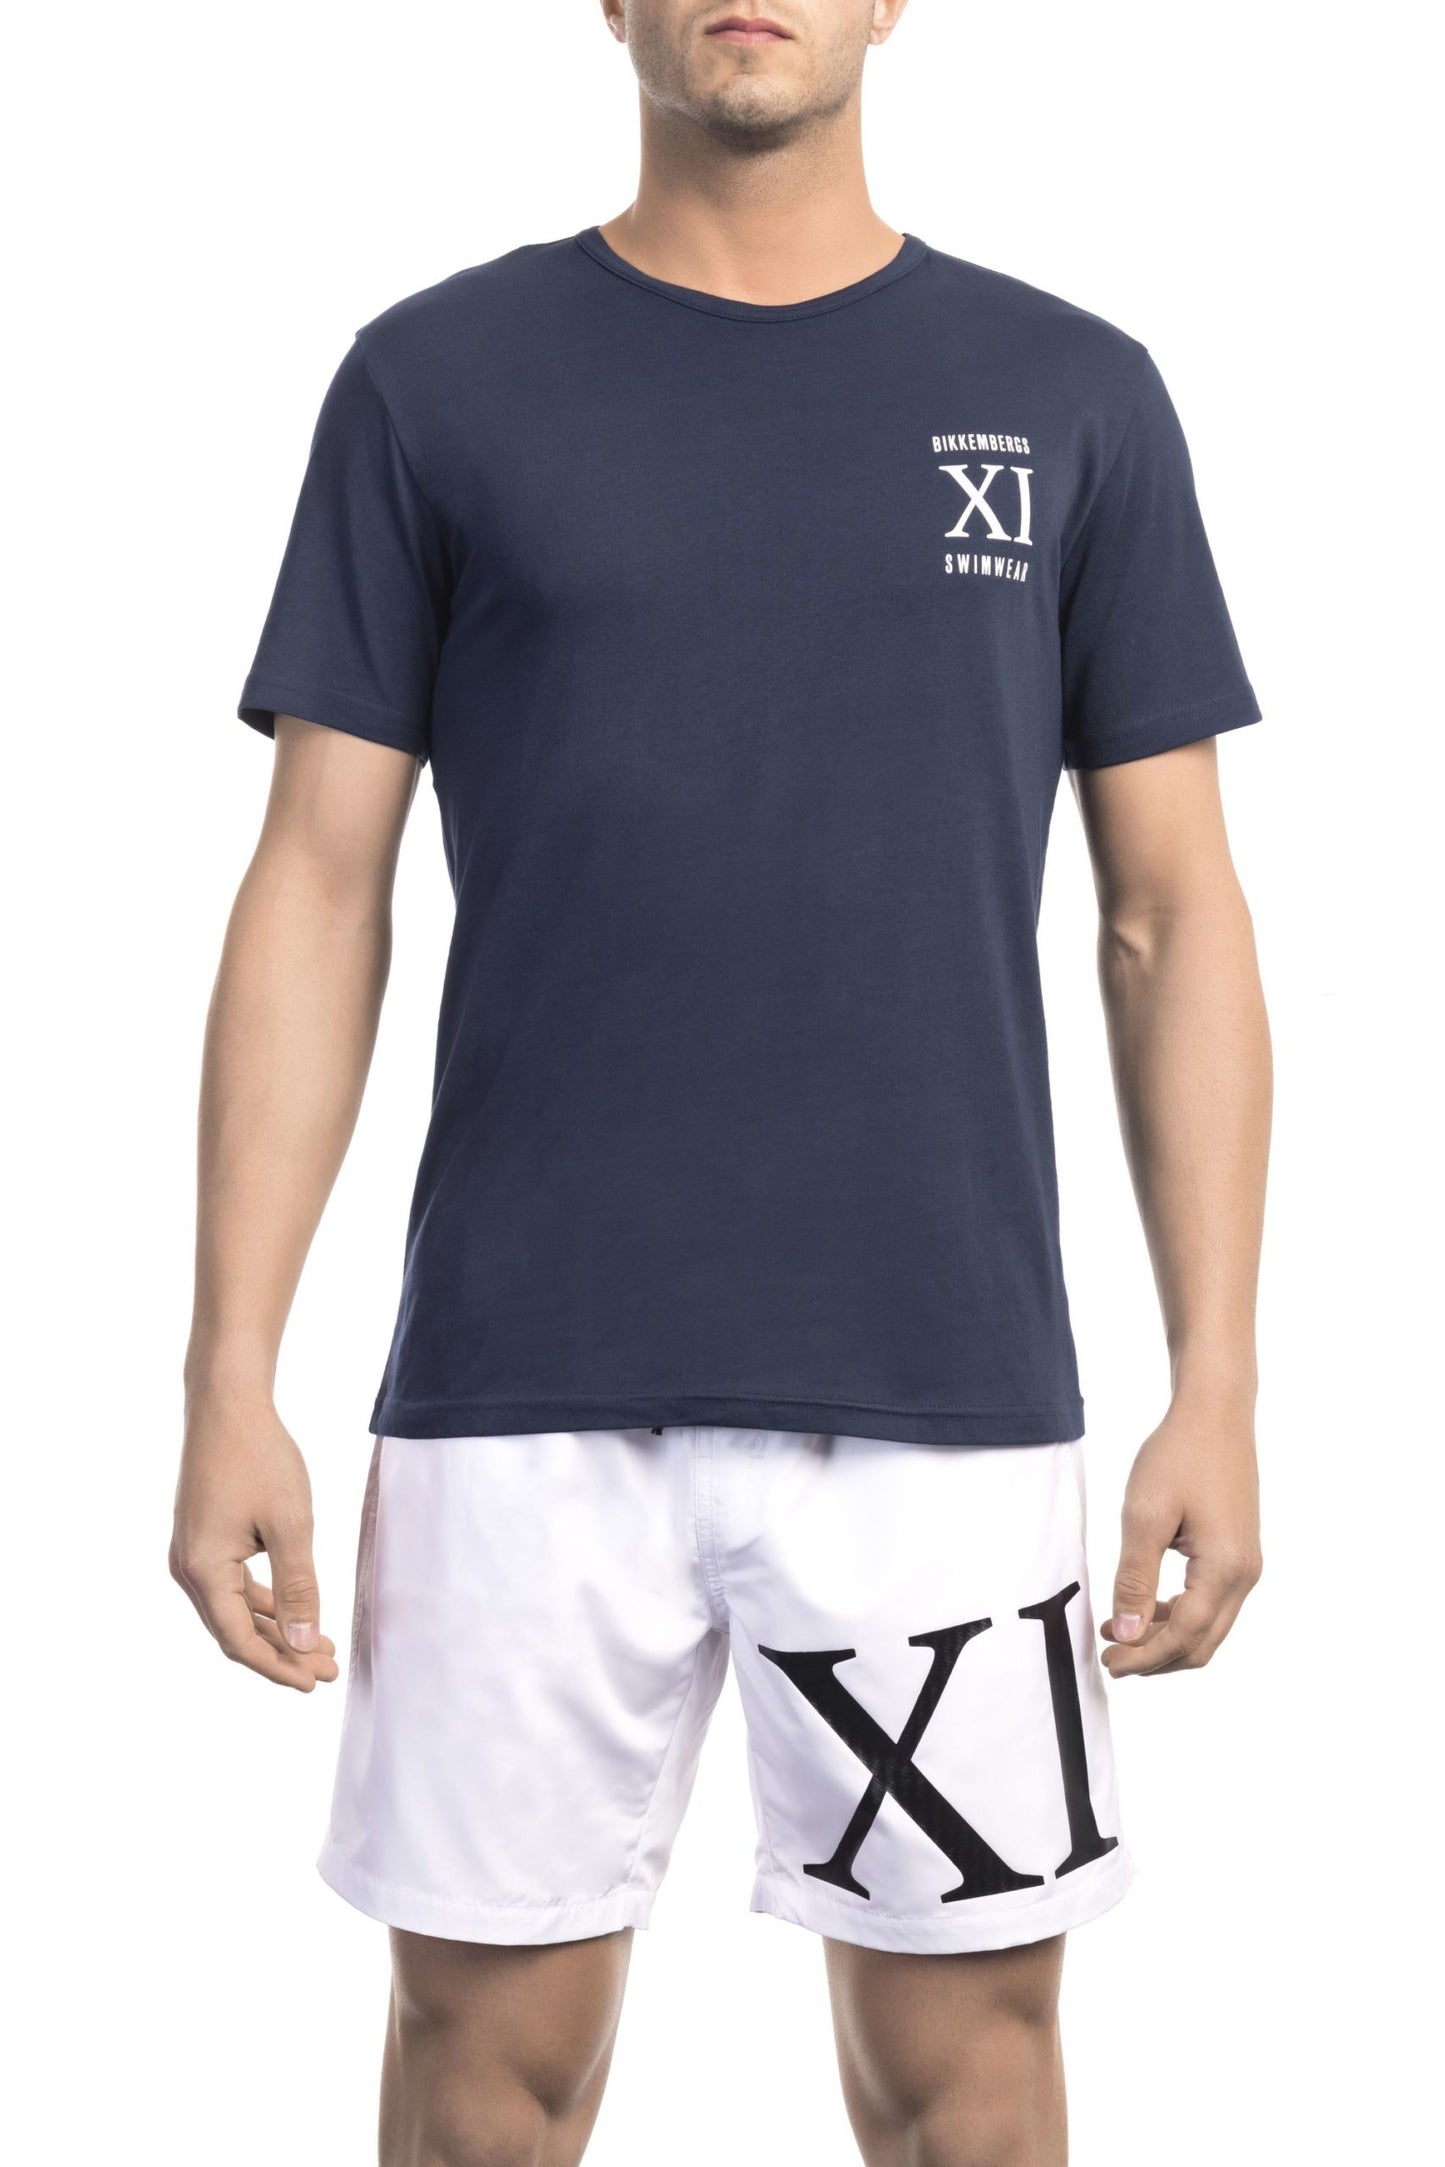 N A V Y   Beachwear T-Shirt